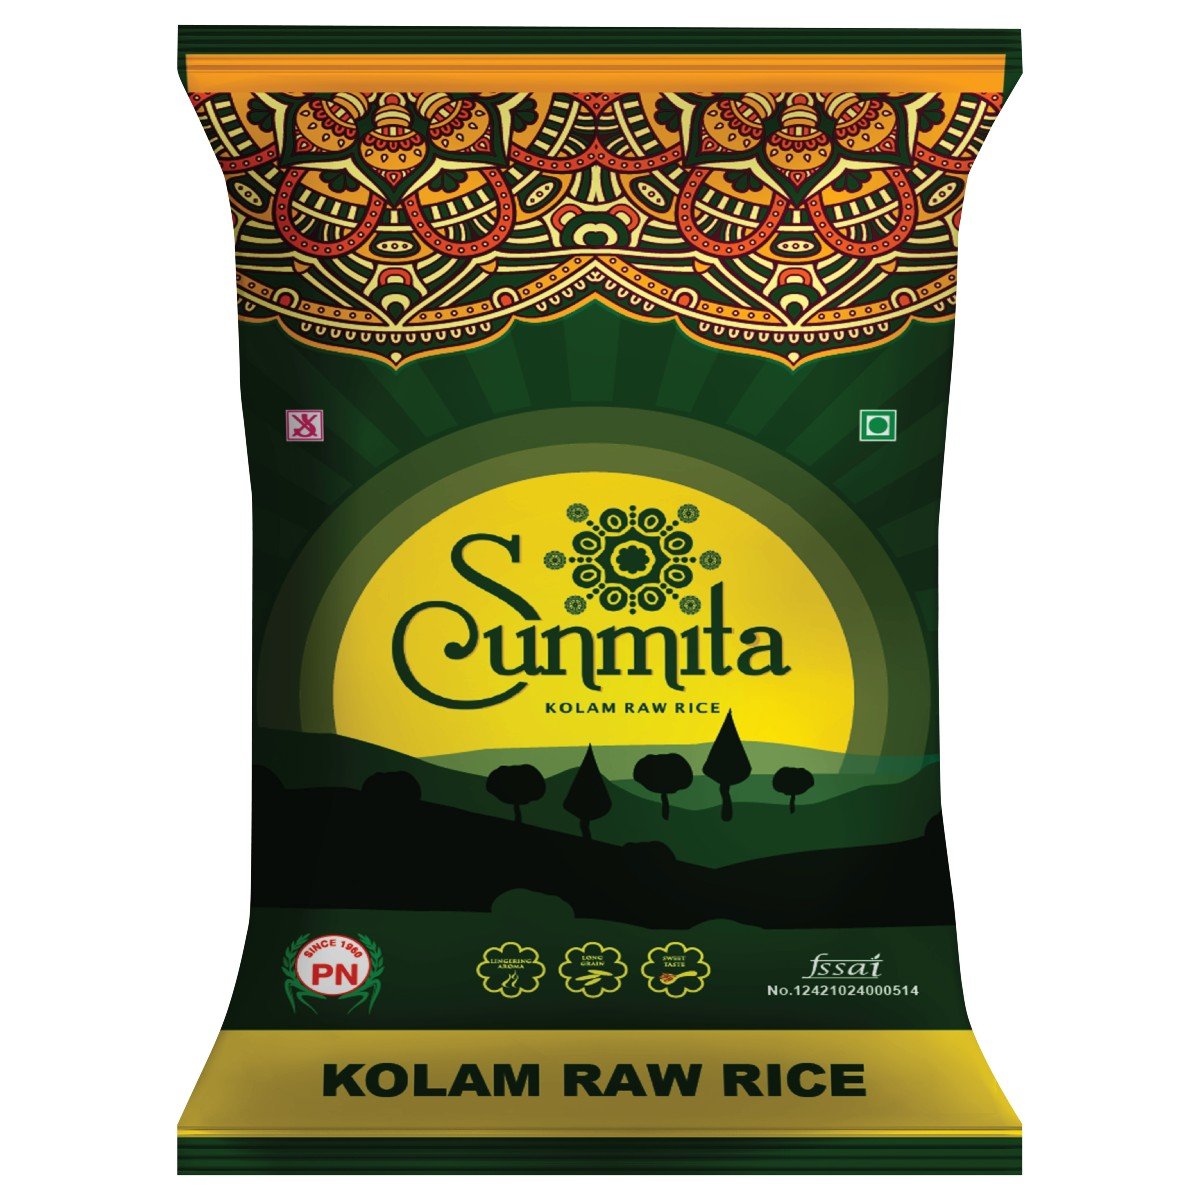 Sunmita - Kolam Raw Rice